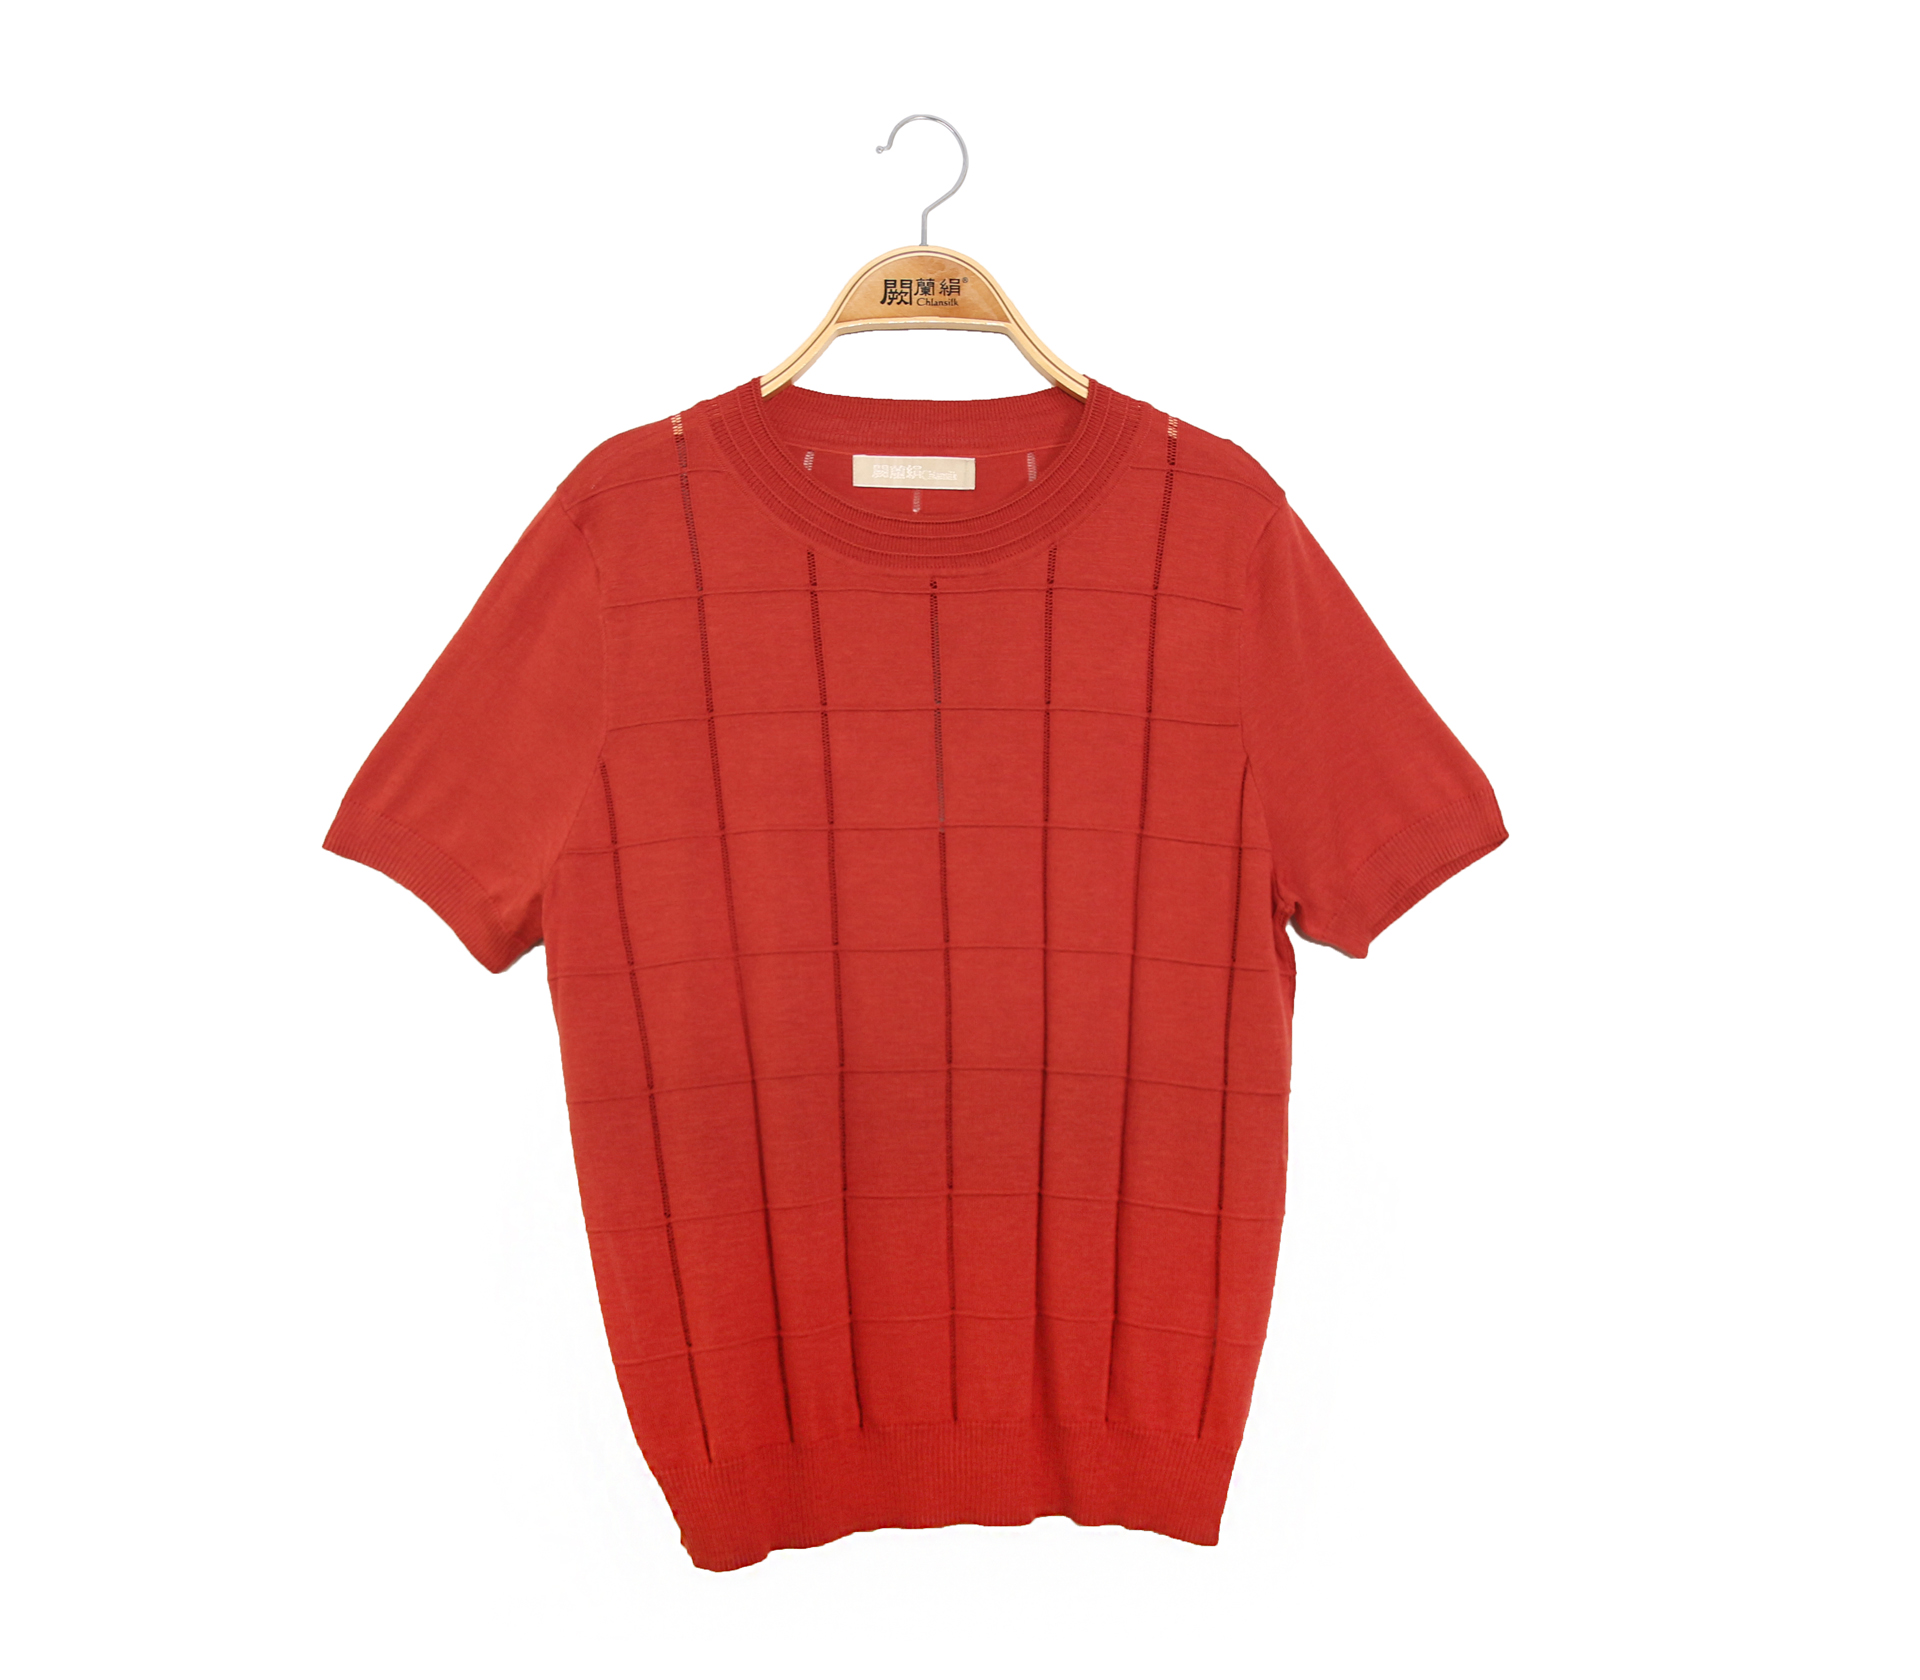 闕蘭絹方格簍空造型針織蠶絲上衣 - 紅色 - 62123